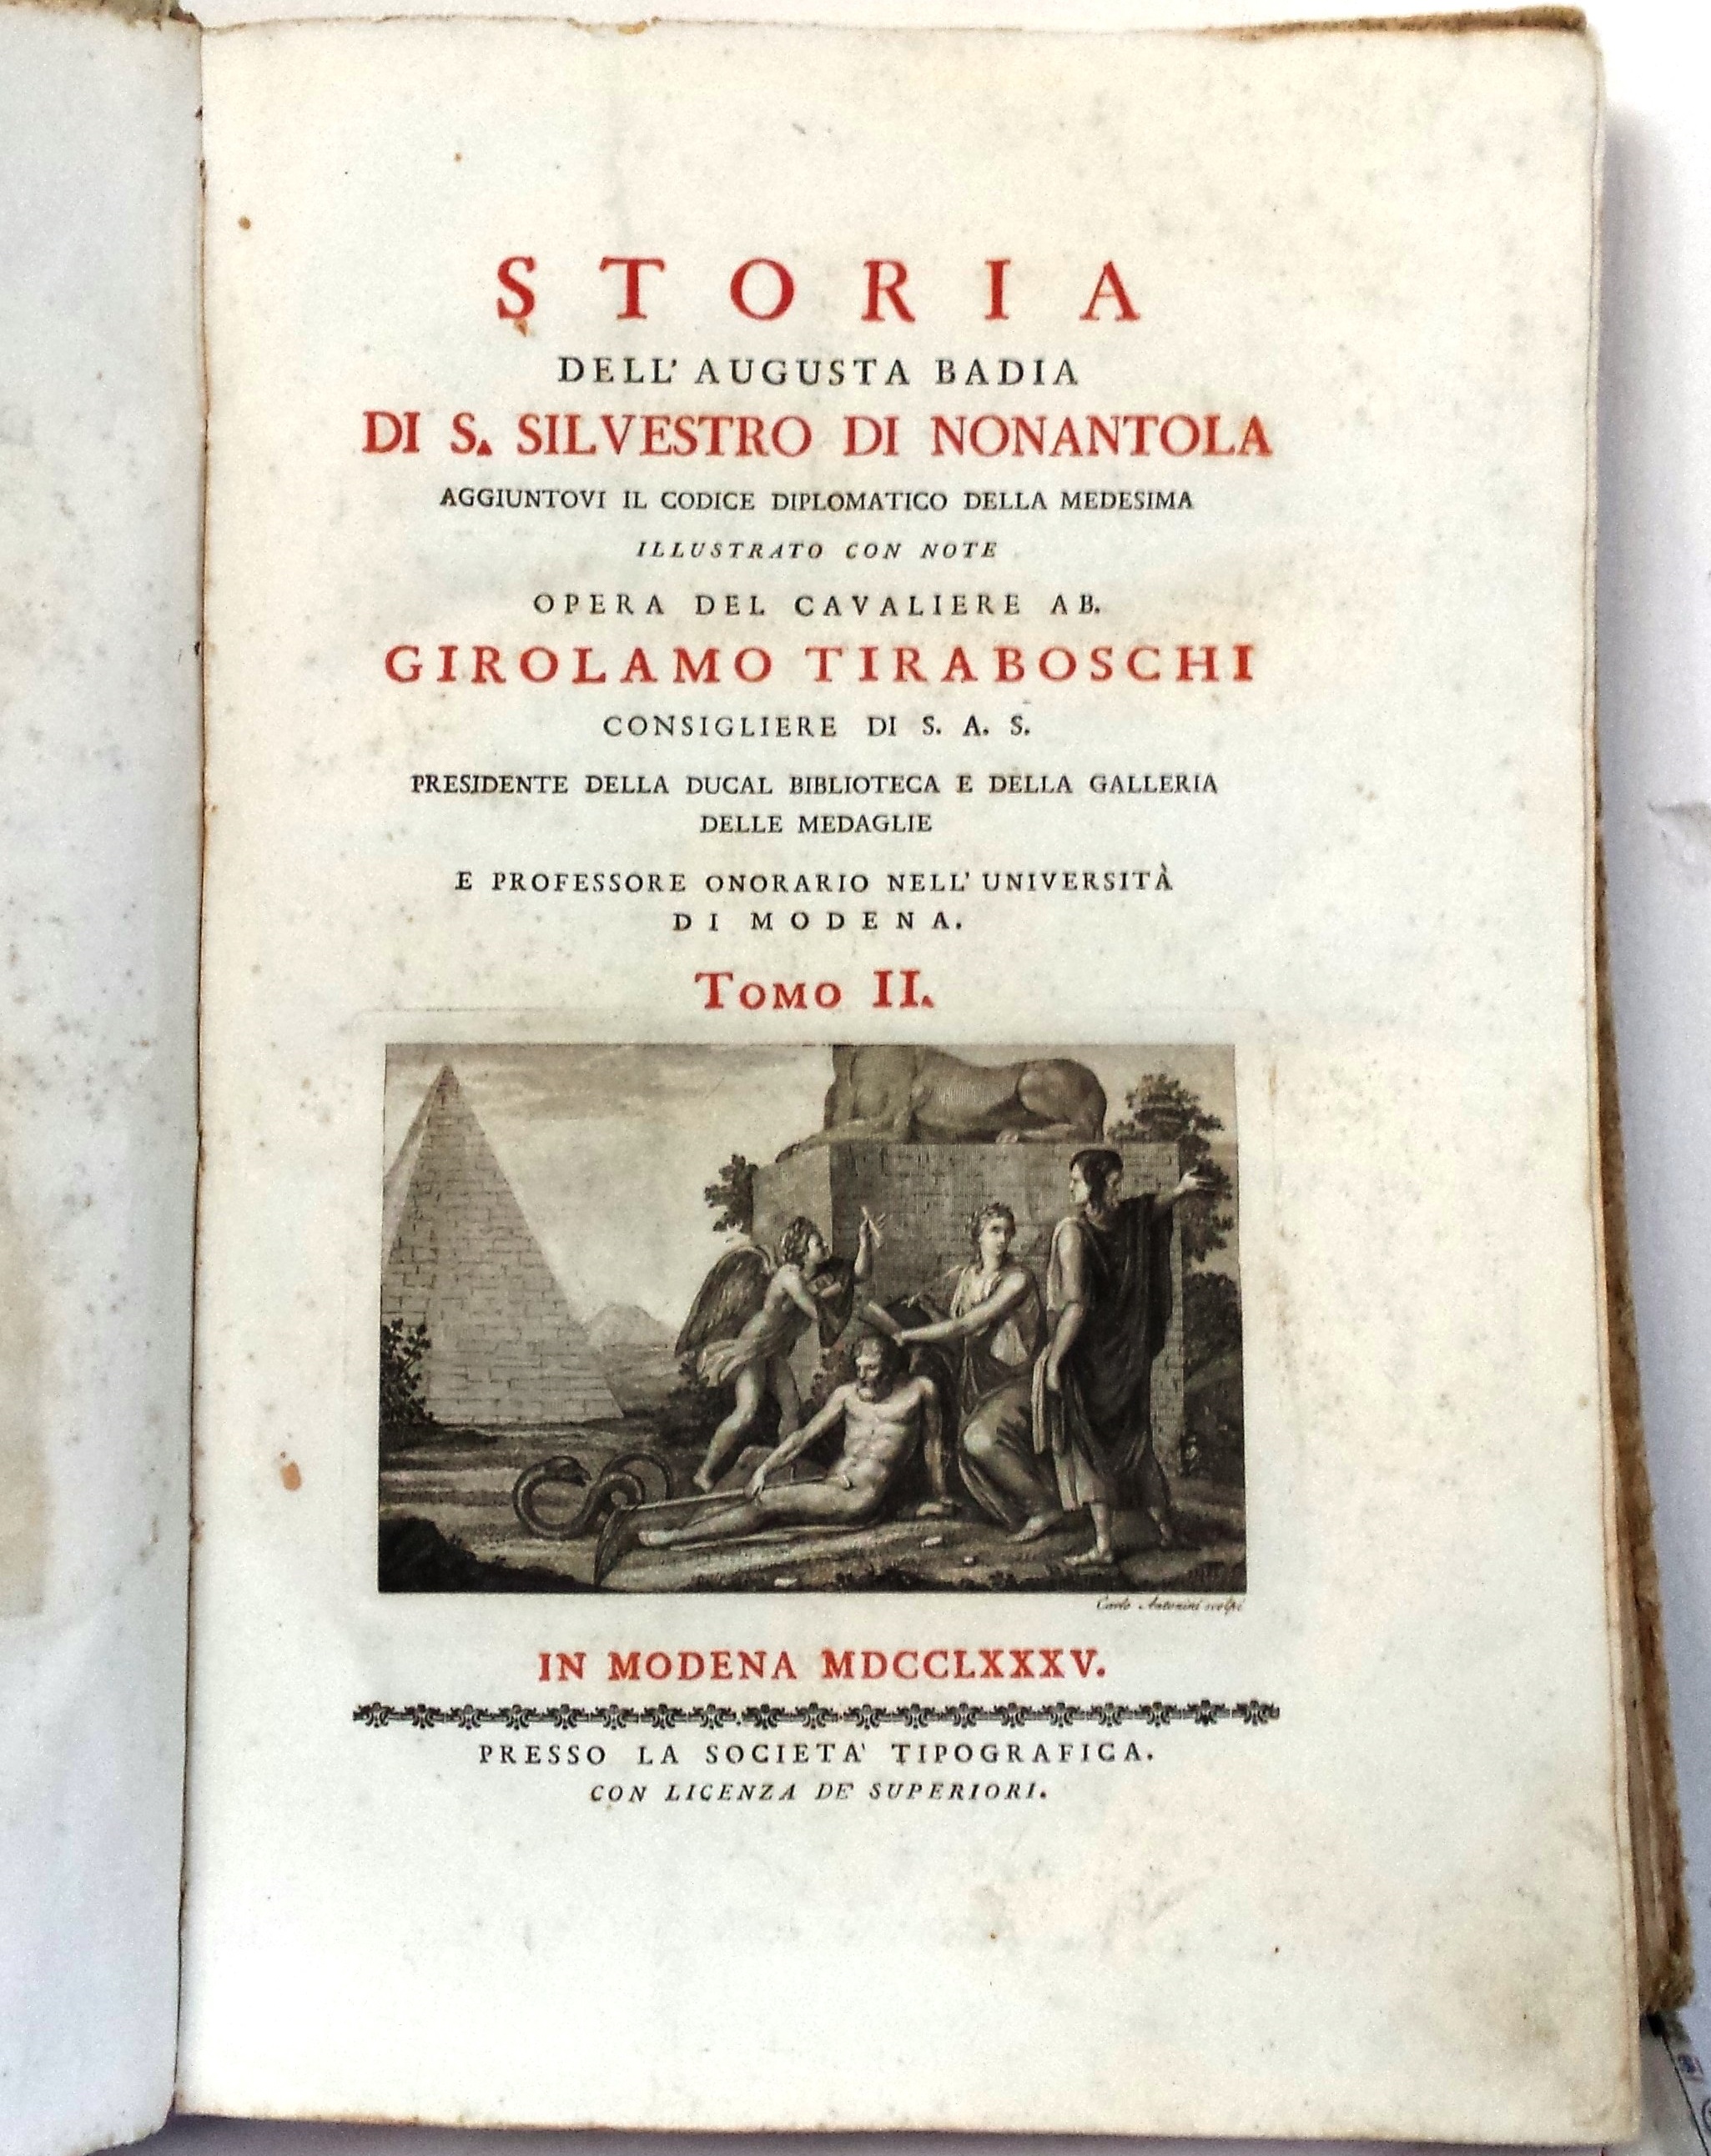 Libro dello storico Girolamo Tiraboschi del 1785